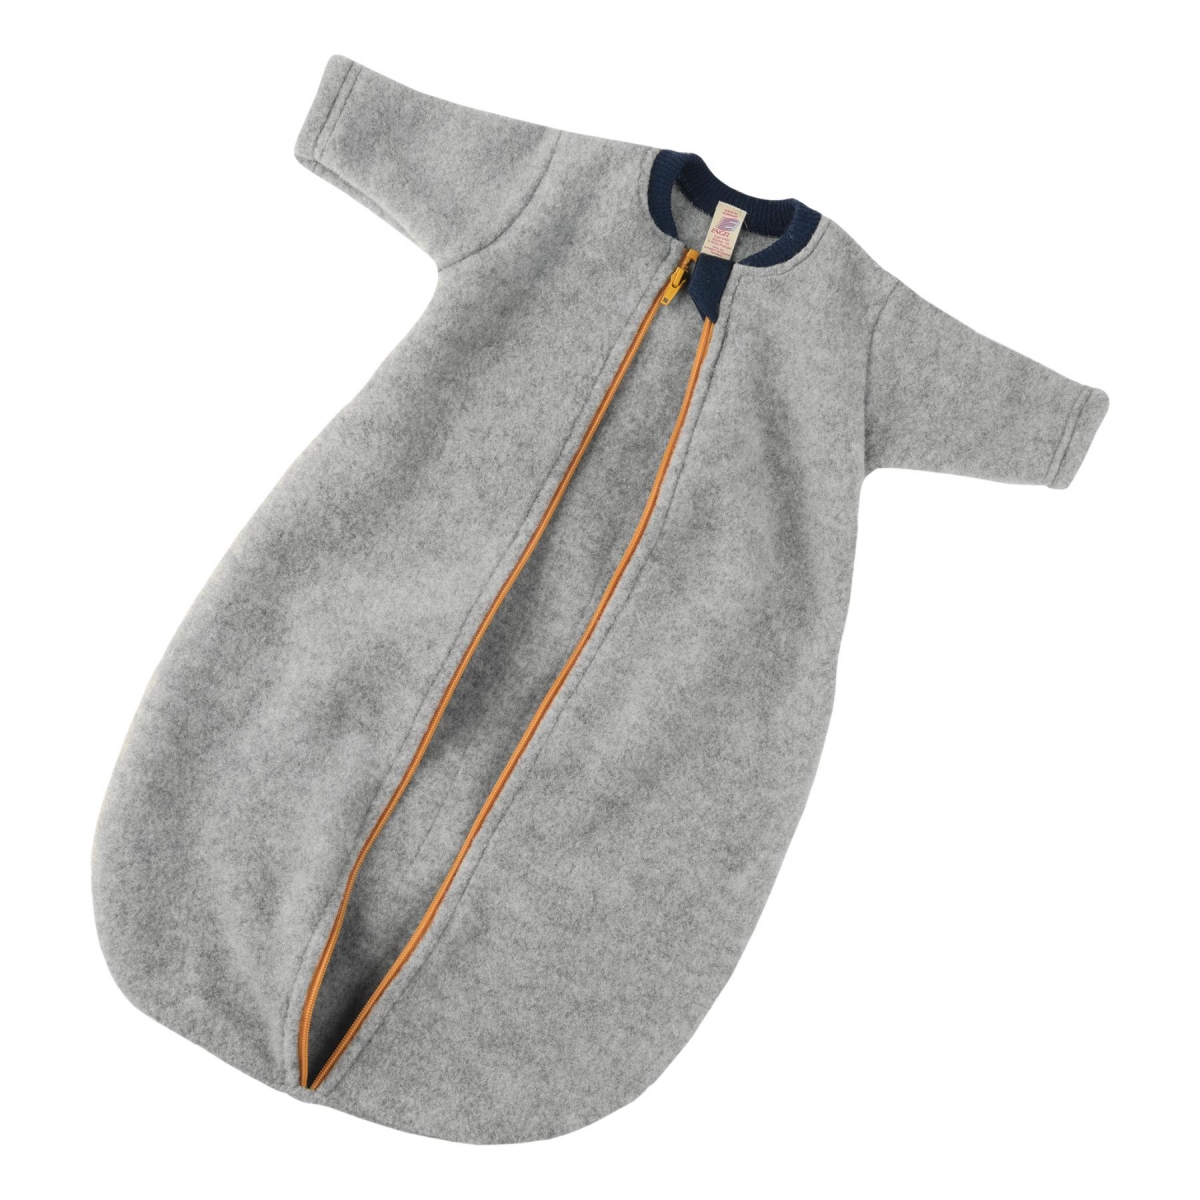 ENGEL Natur Baby sleeping-bag sleeve grey melange with zip